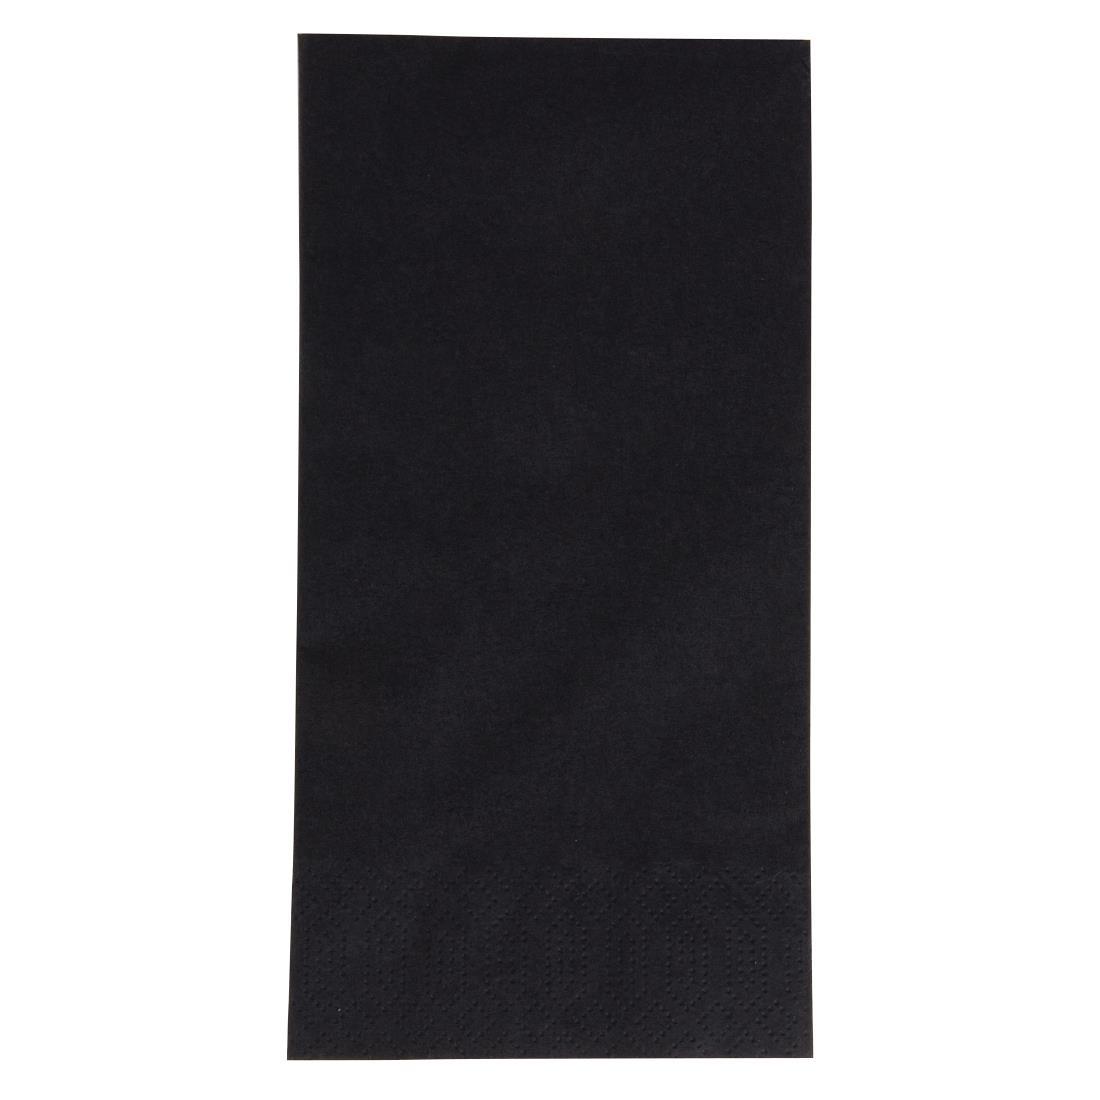 Duni Dinner Napkin Black 40x40cm 3ply 1/8 Fold (Pack of 1000) - GJ119  - 1